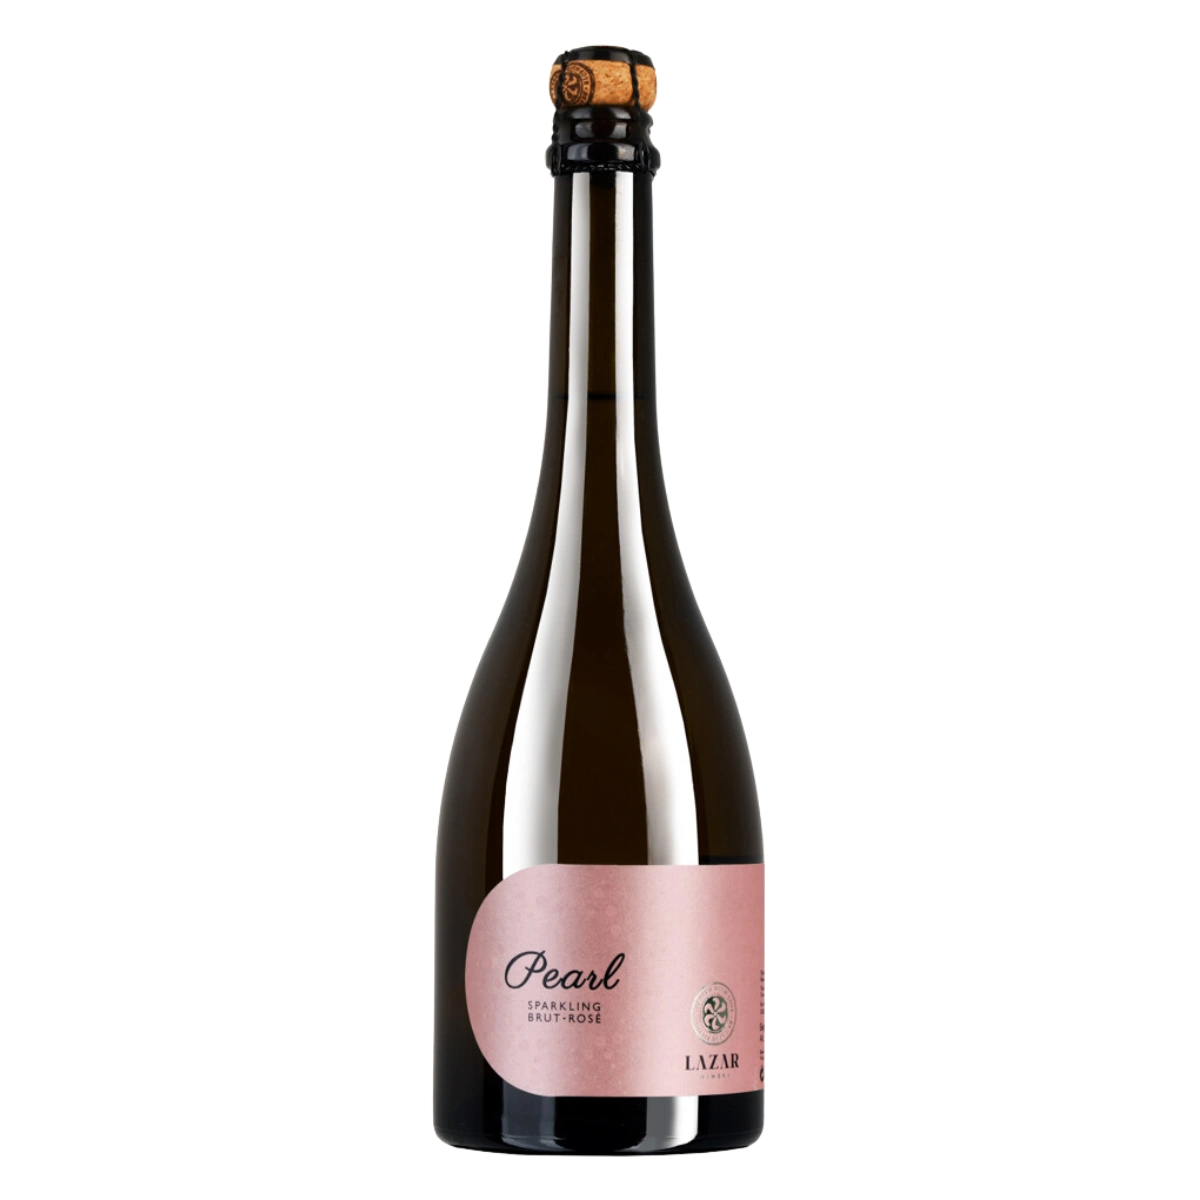 Pearl Sparkling Brut Rosé 2021 - Schaumwein trocken aus Mazedonien - Lazar Winery